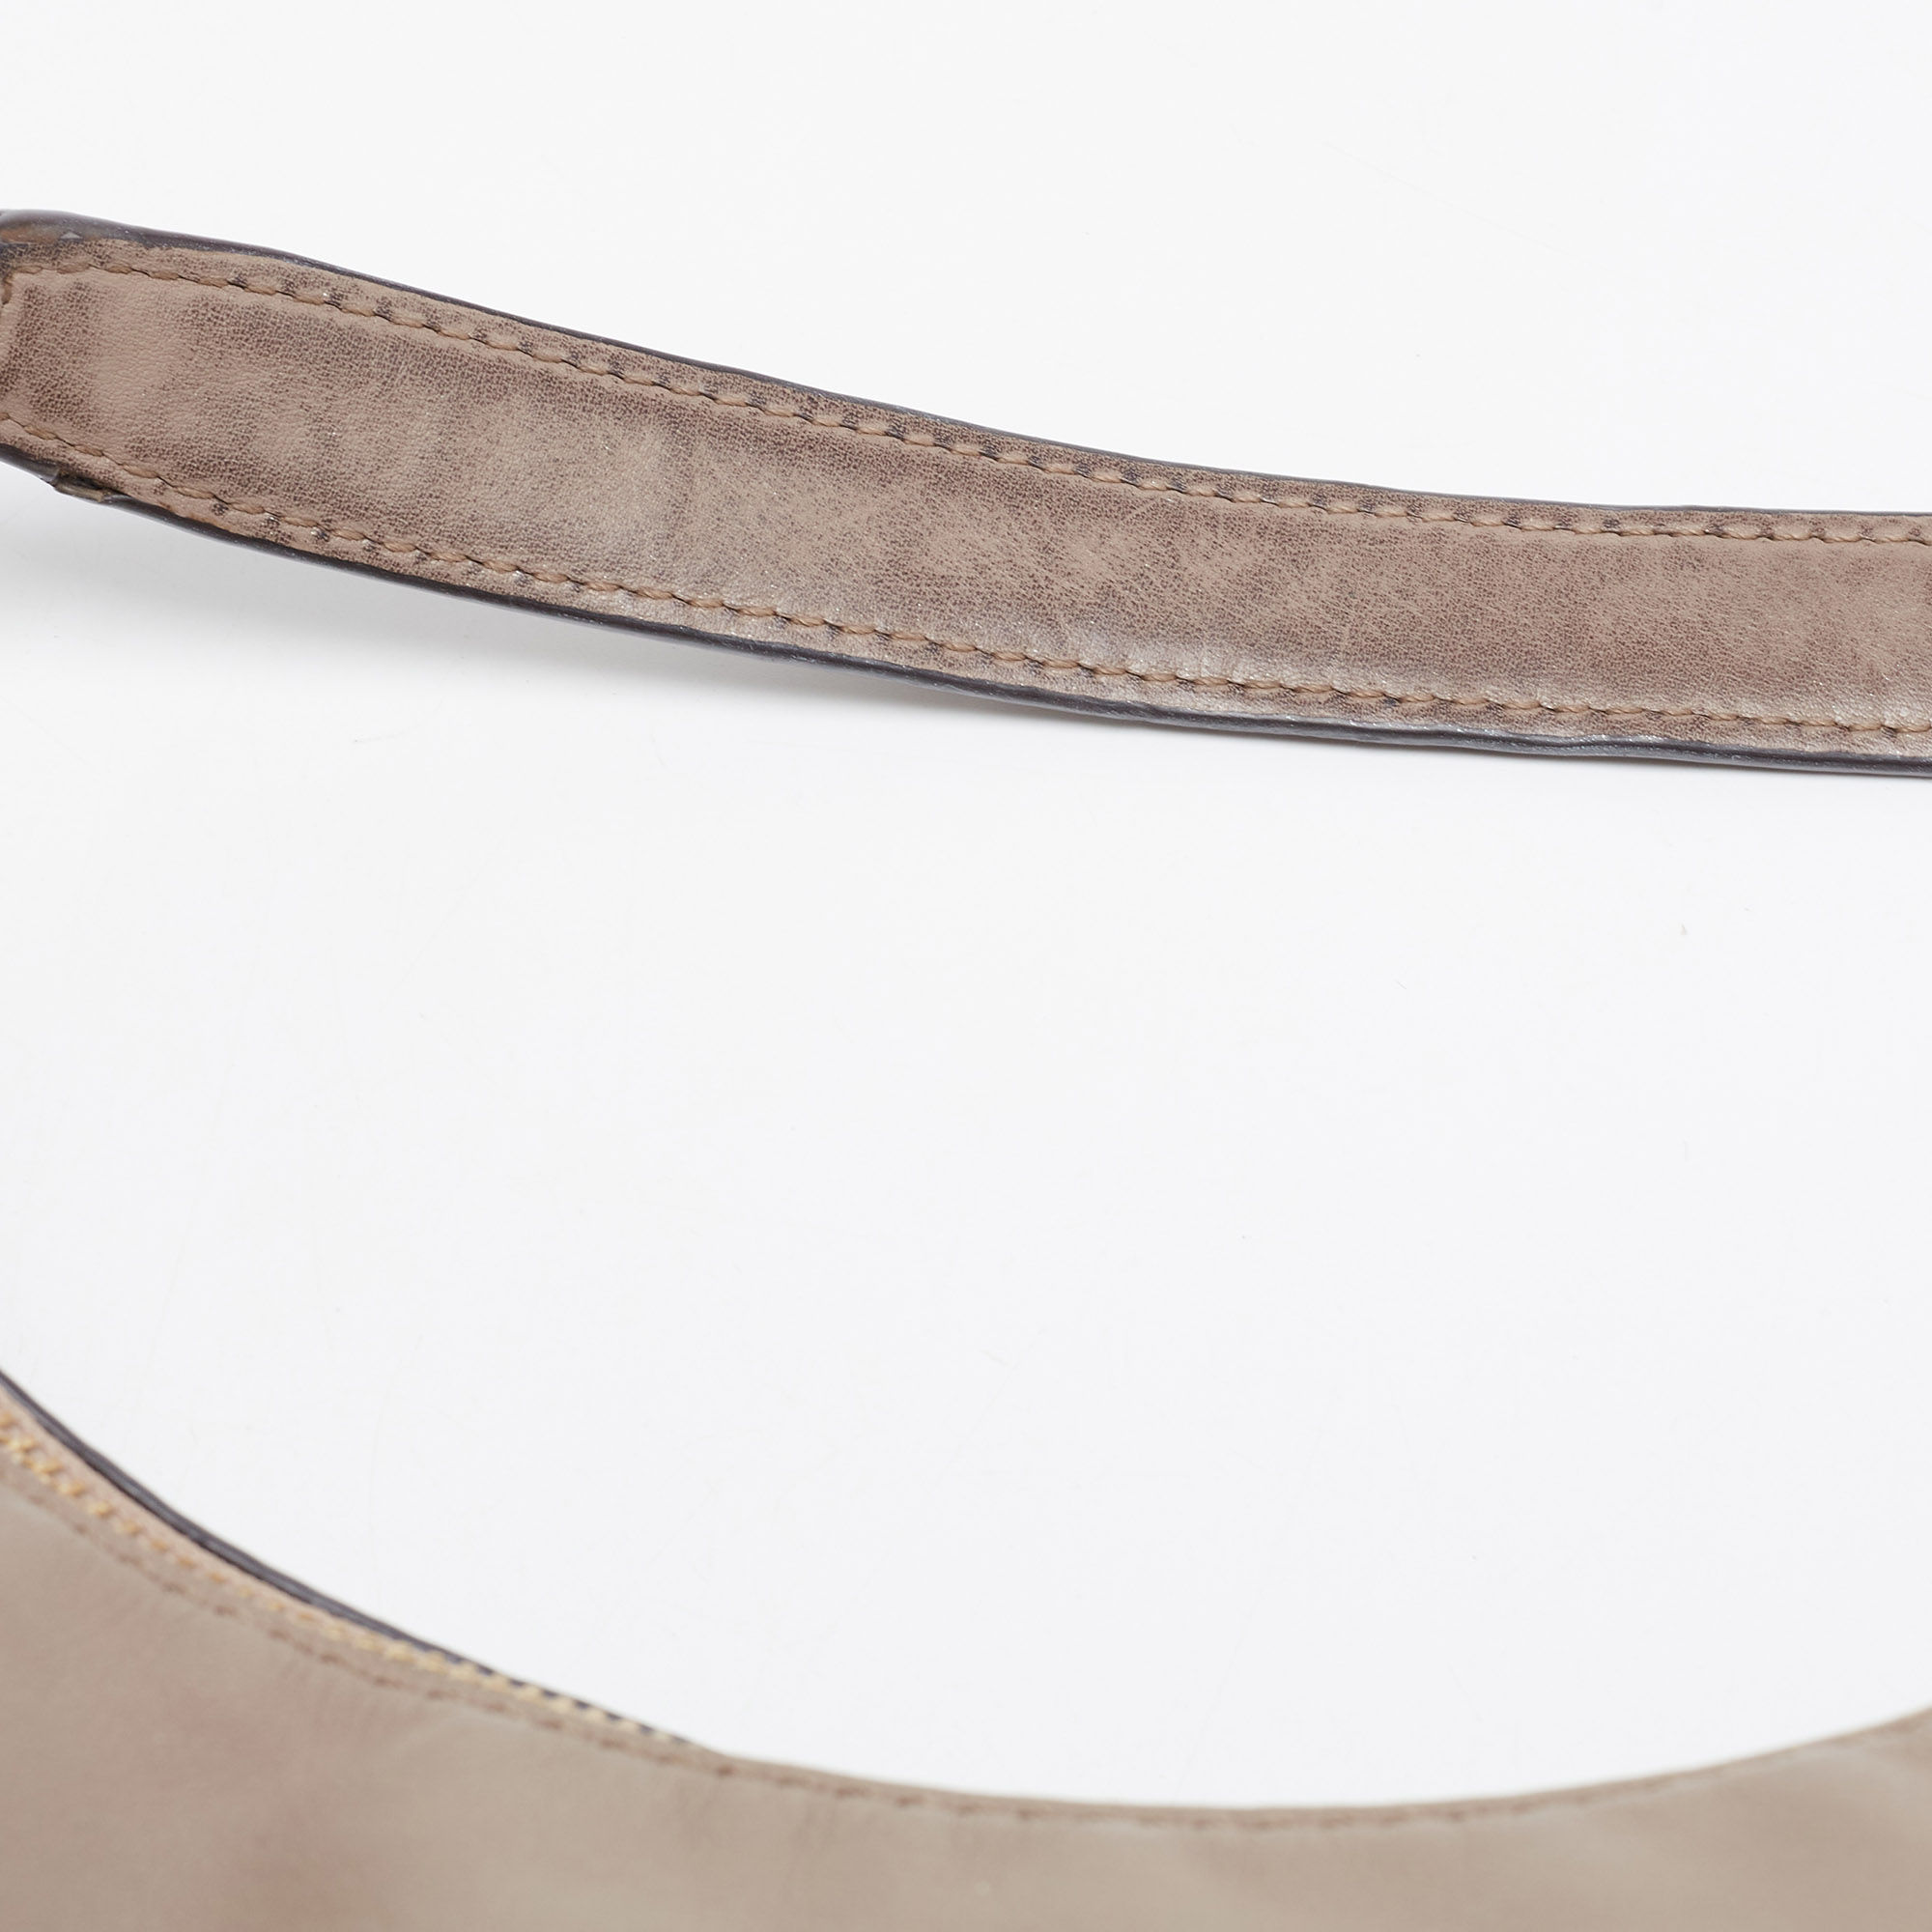 Michael Kors Beige Leather Matilda Shoulder Bag